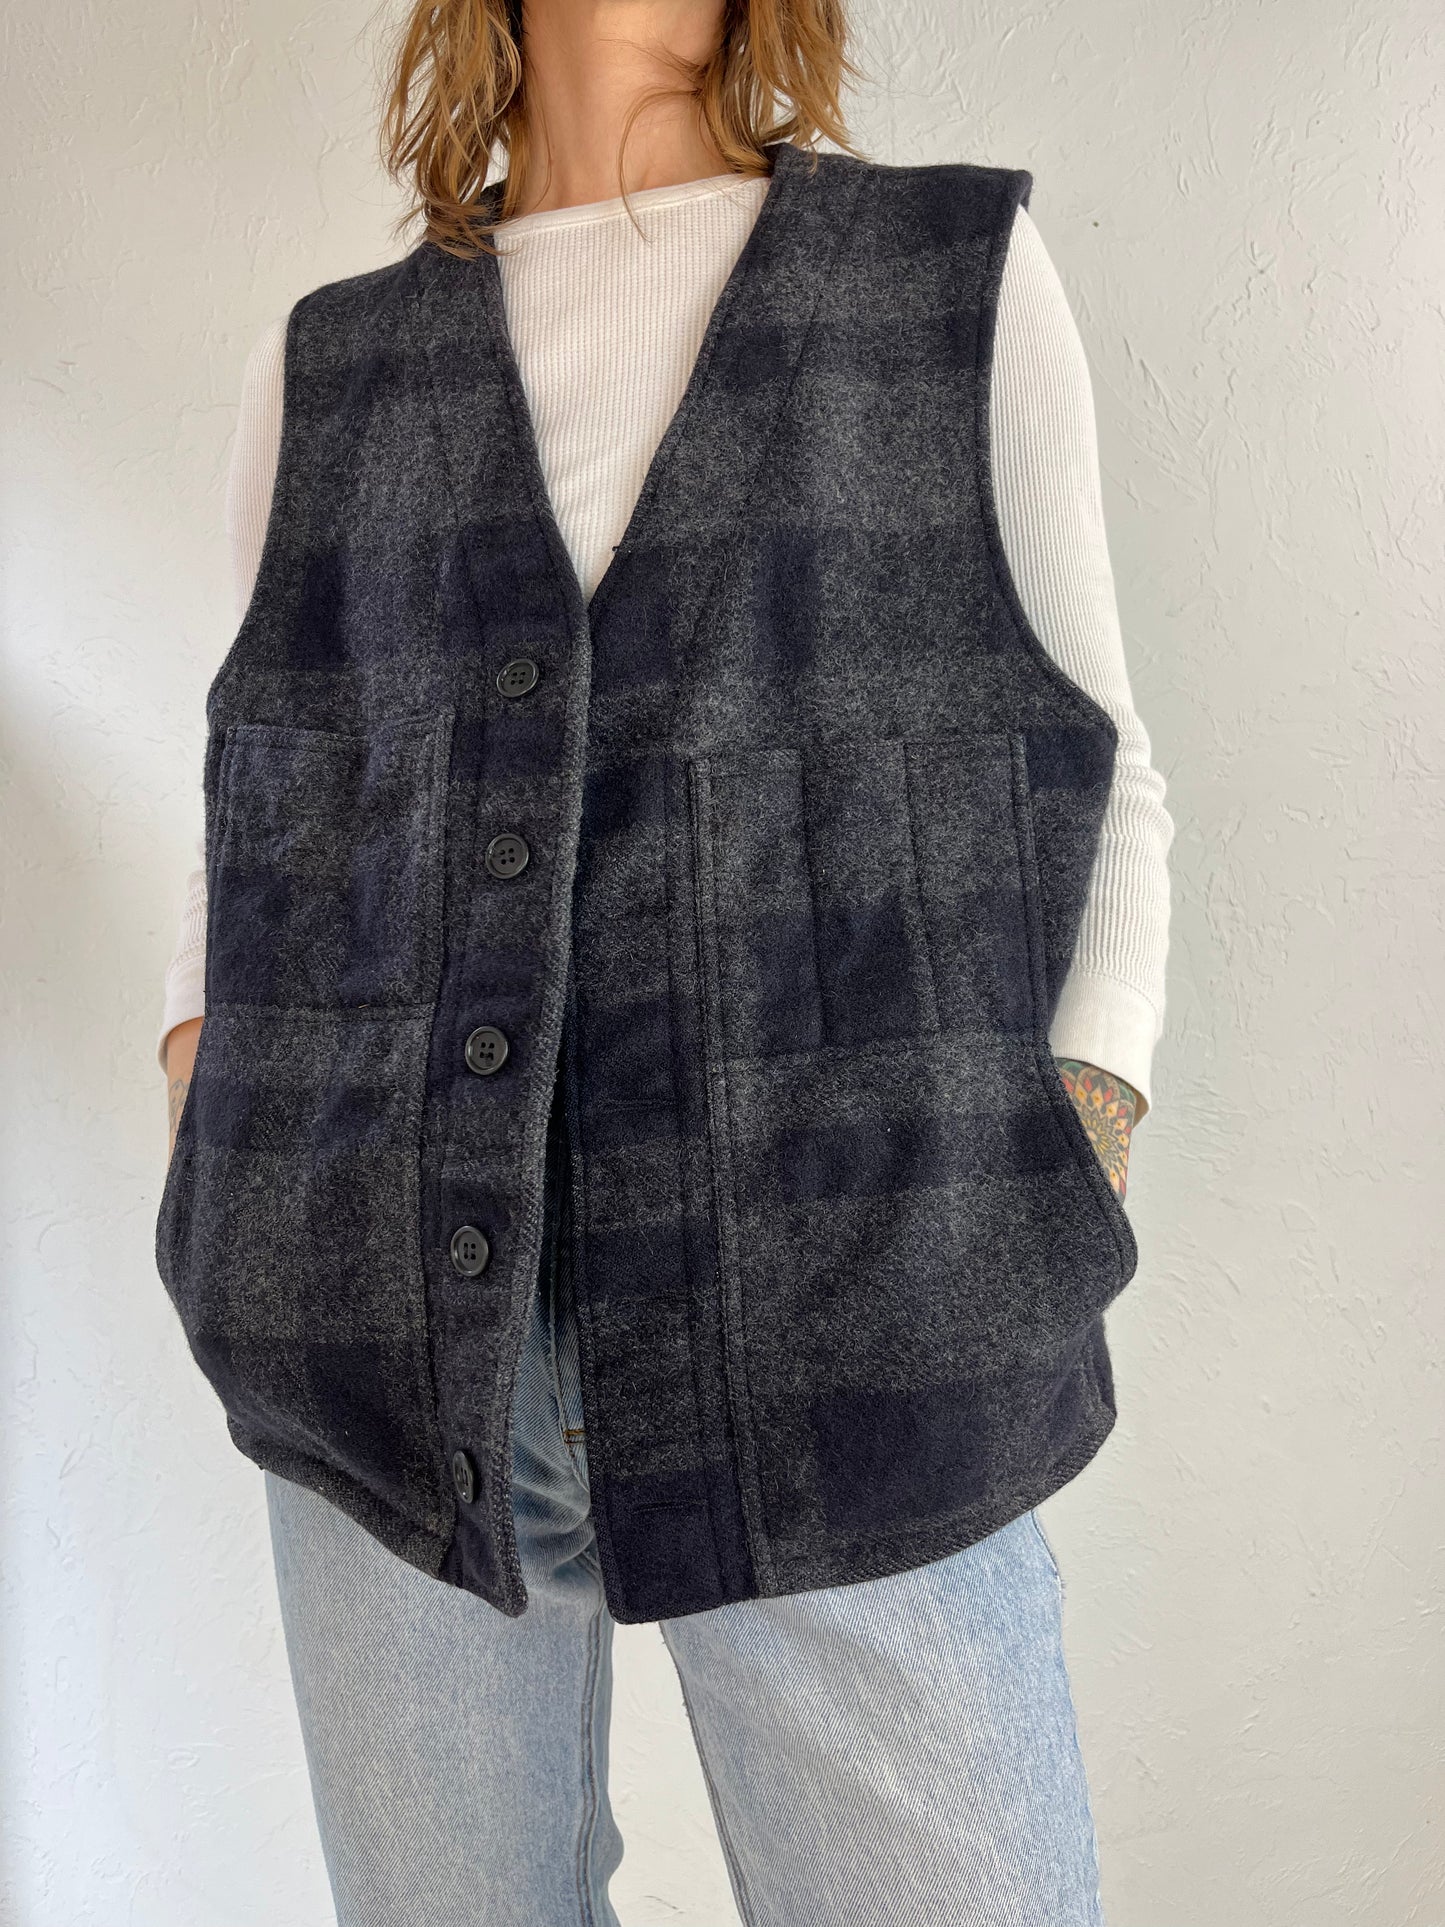 Vintage Filson Wool Vest / Medium - Large